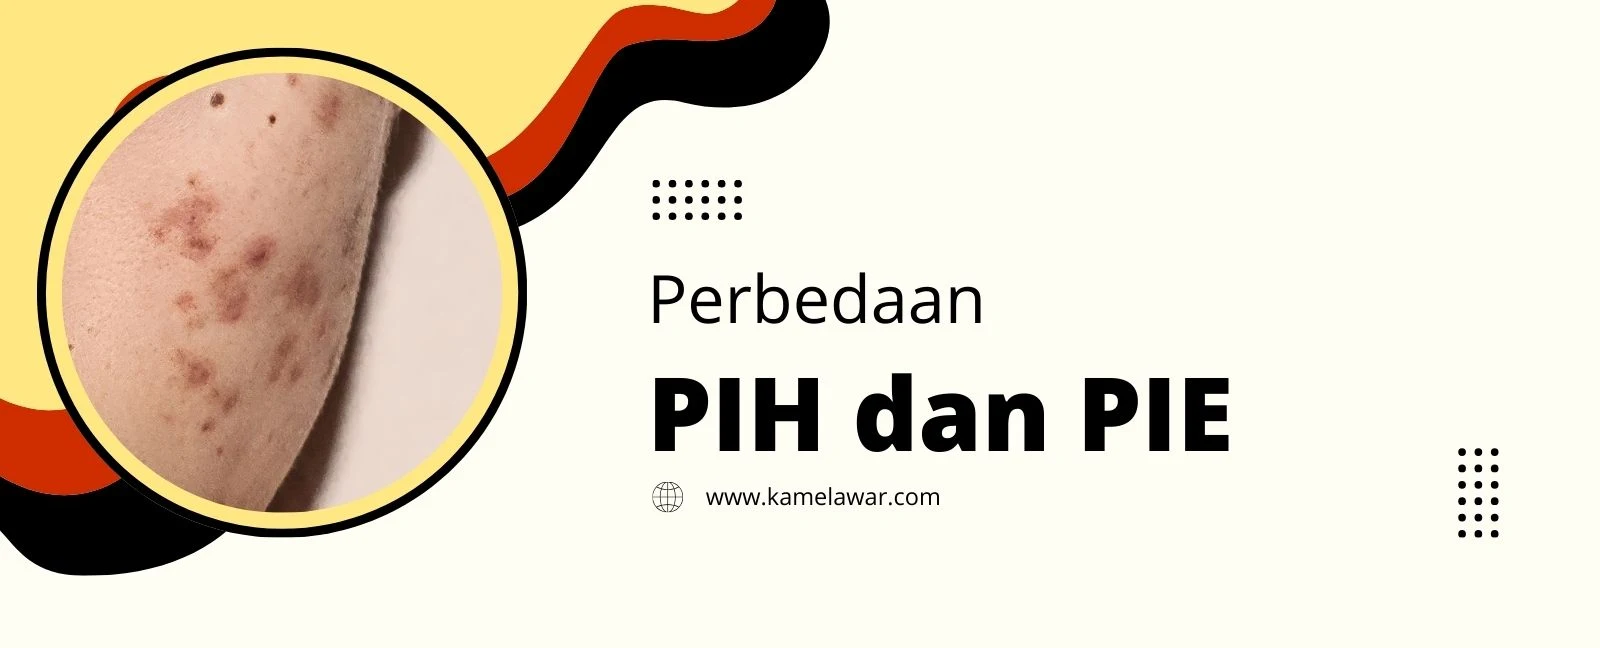 Perbedaan antara PIH dan PIE